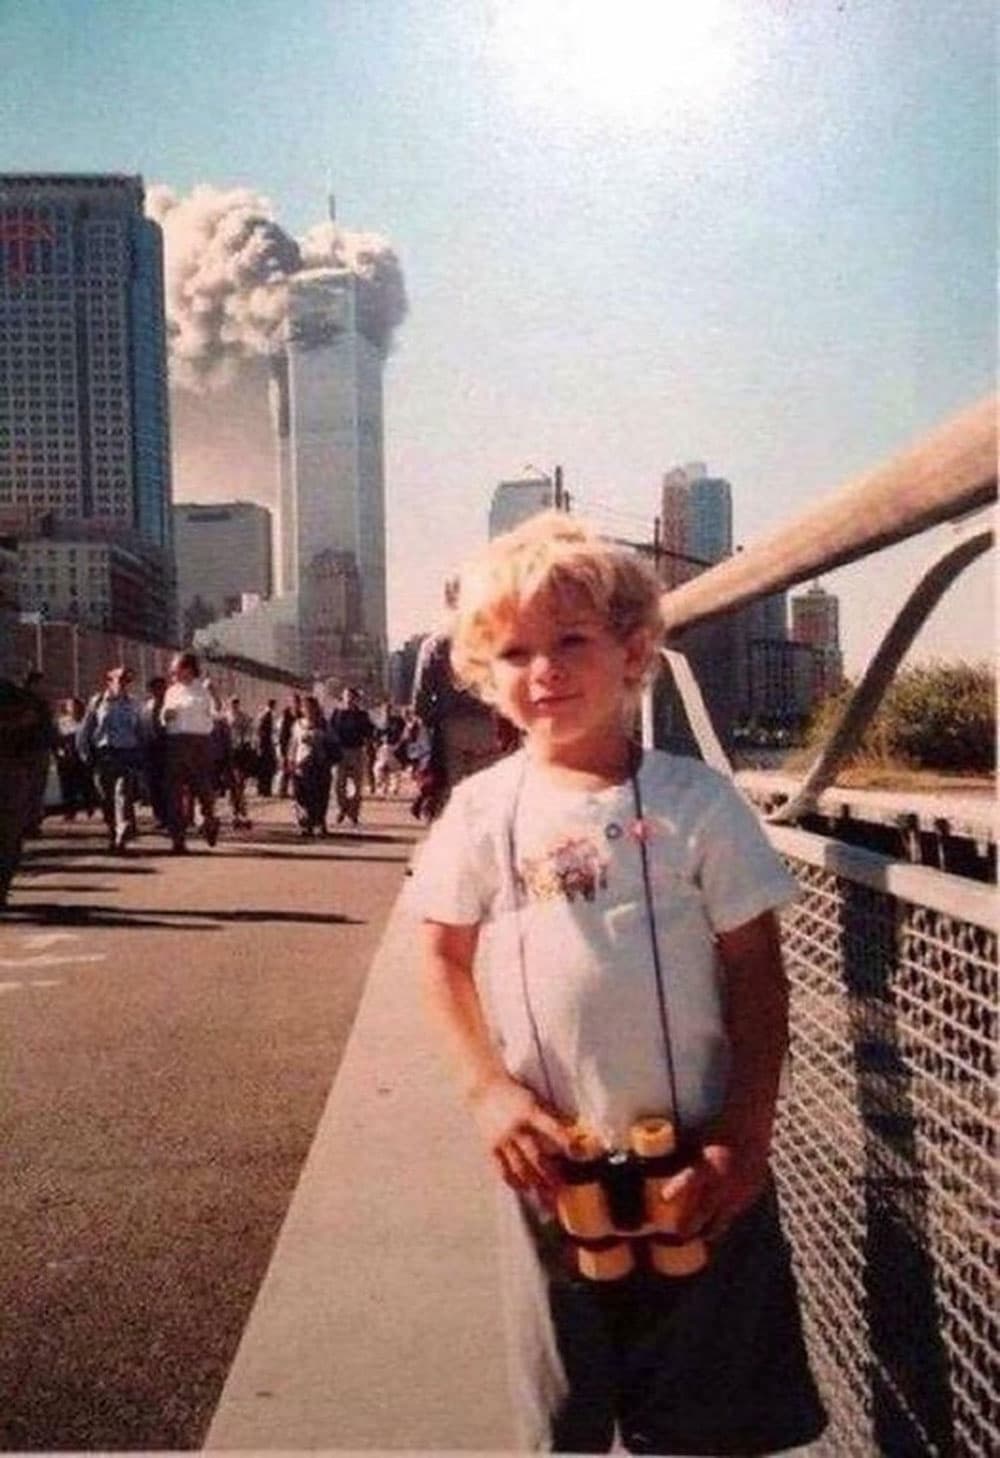 The 9 11 Hoax That Wasn T Endless Thread